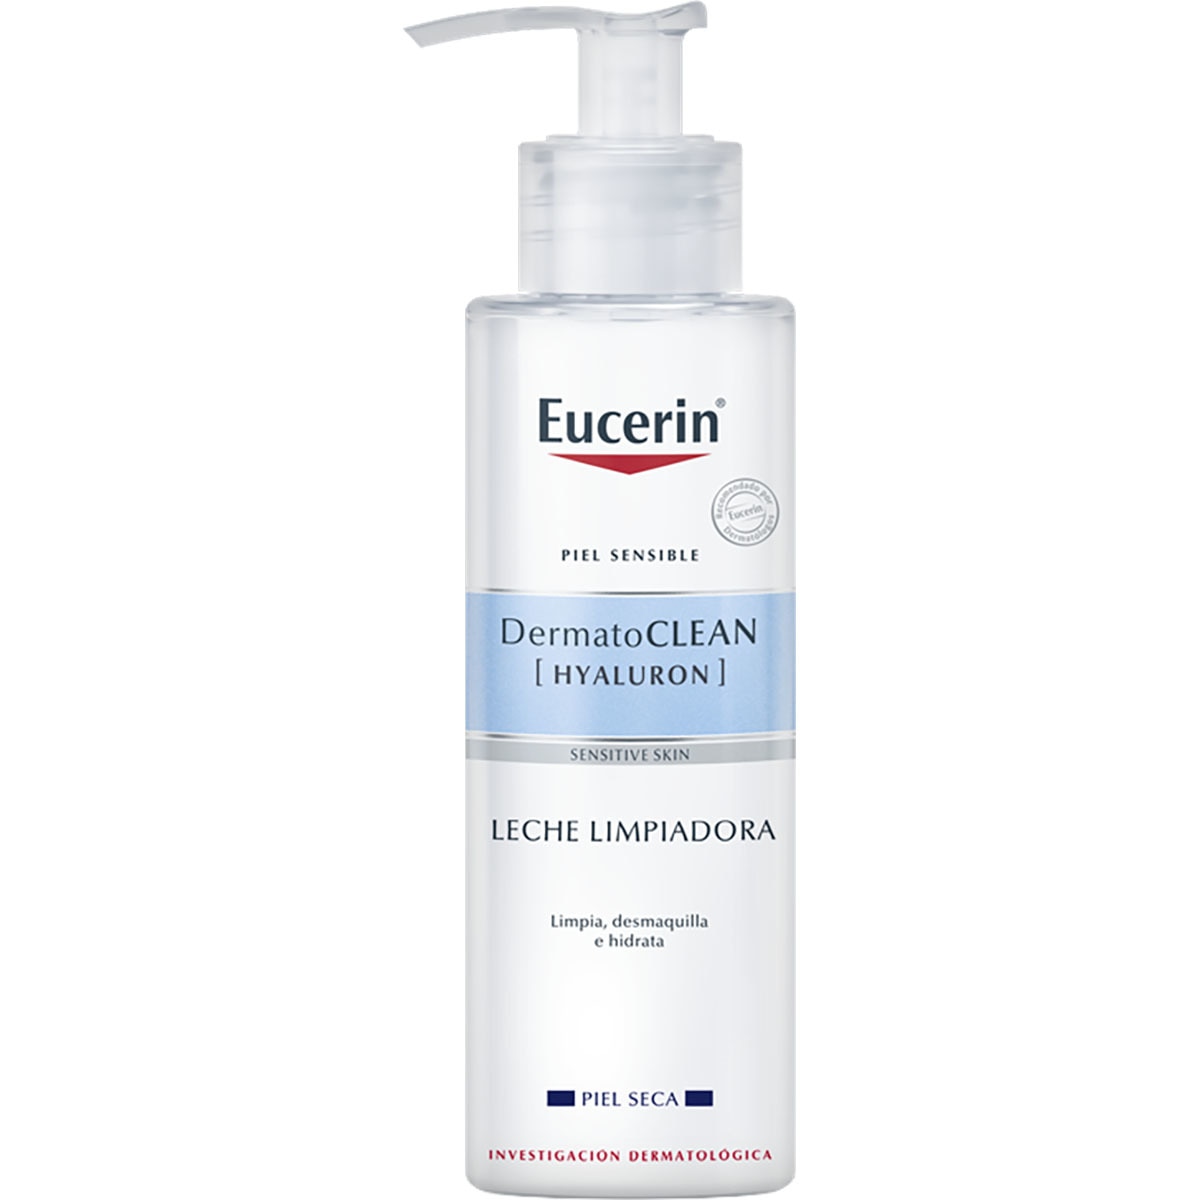 EUCERIN Dermatoclean emulsión limpiadora suave que elimina el maquillaje dosificador 200 ml para pieles secas incluidas las sensibles